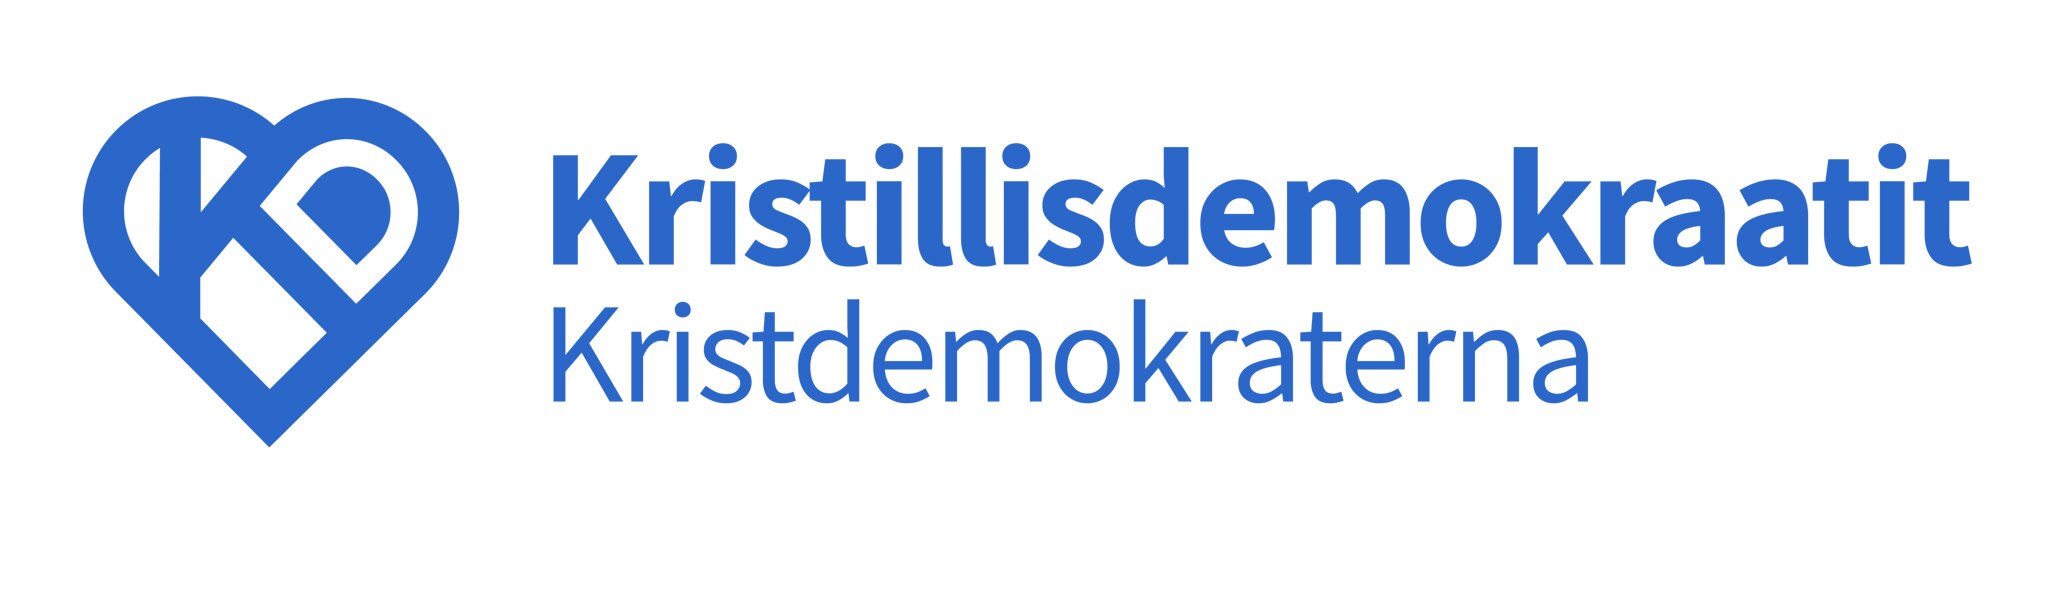 Kristillisdemokraattien logo